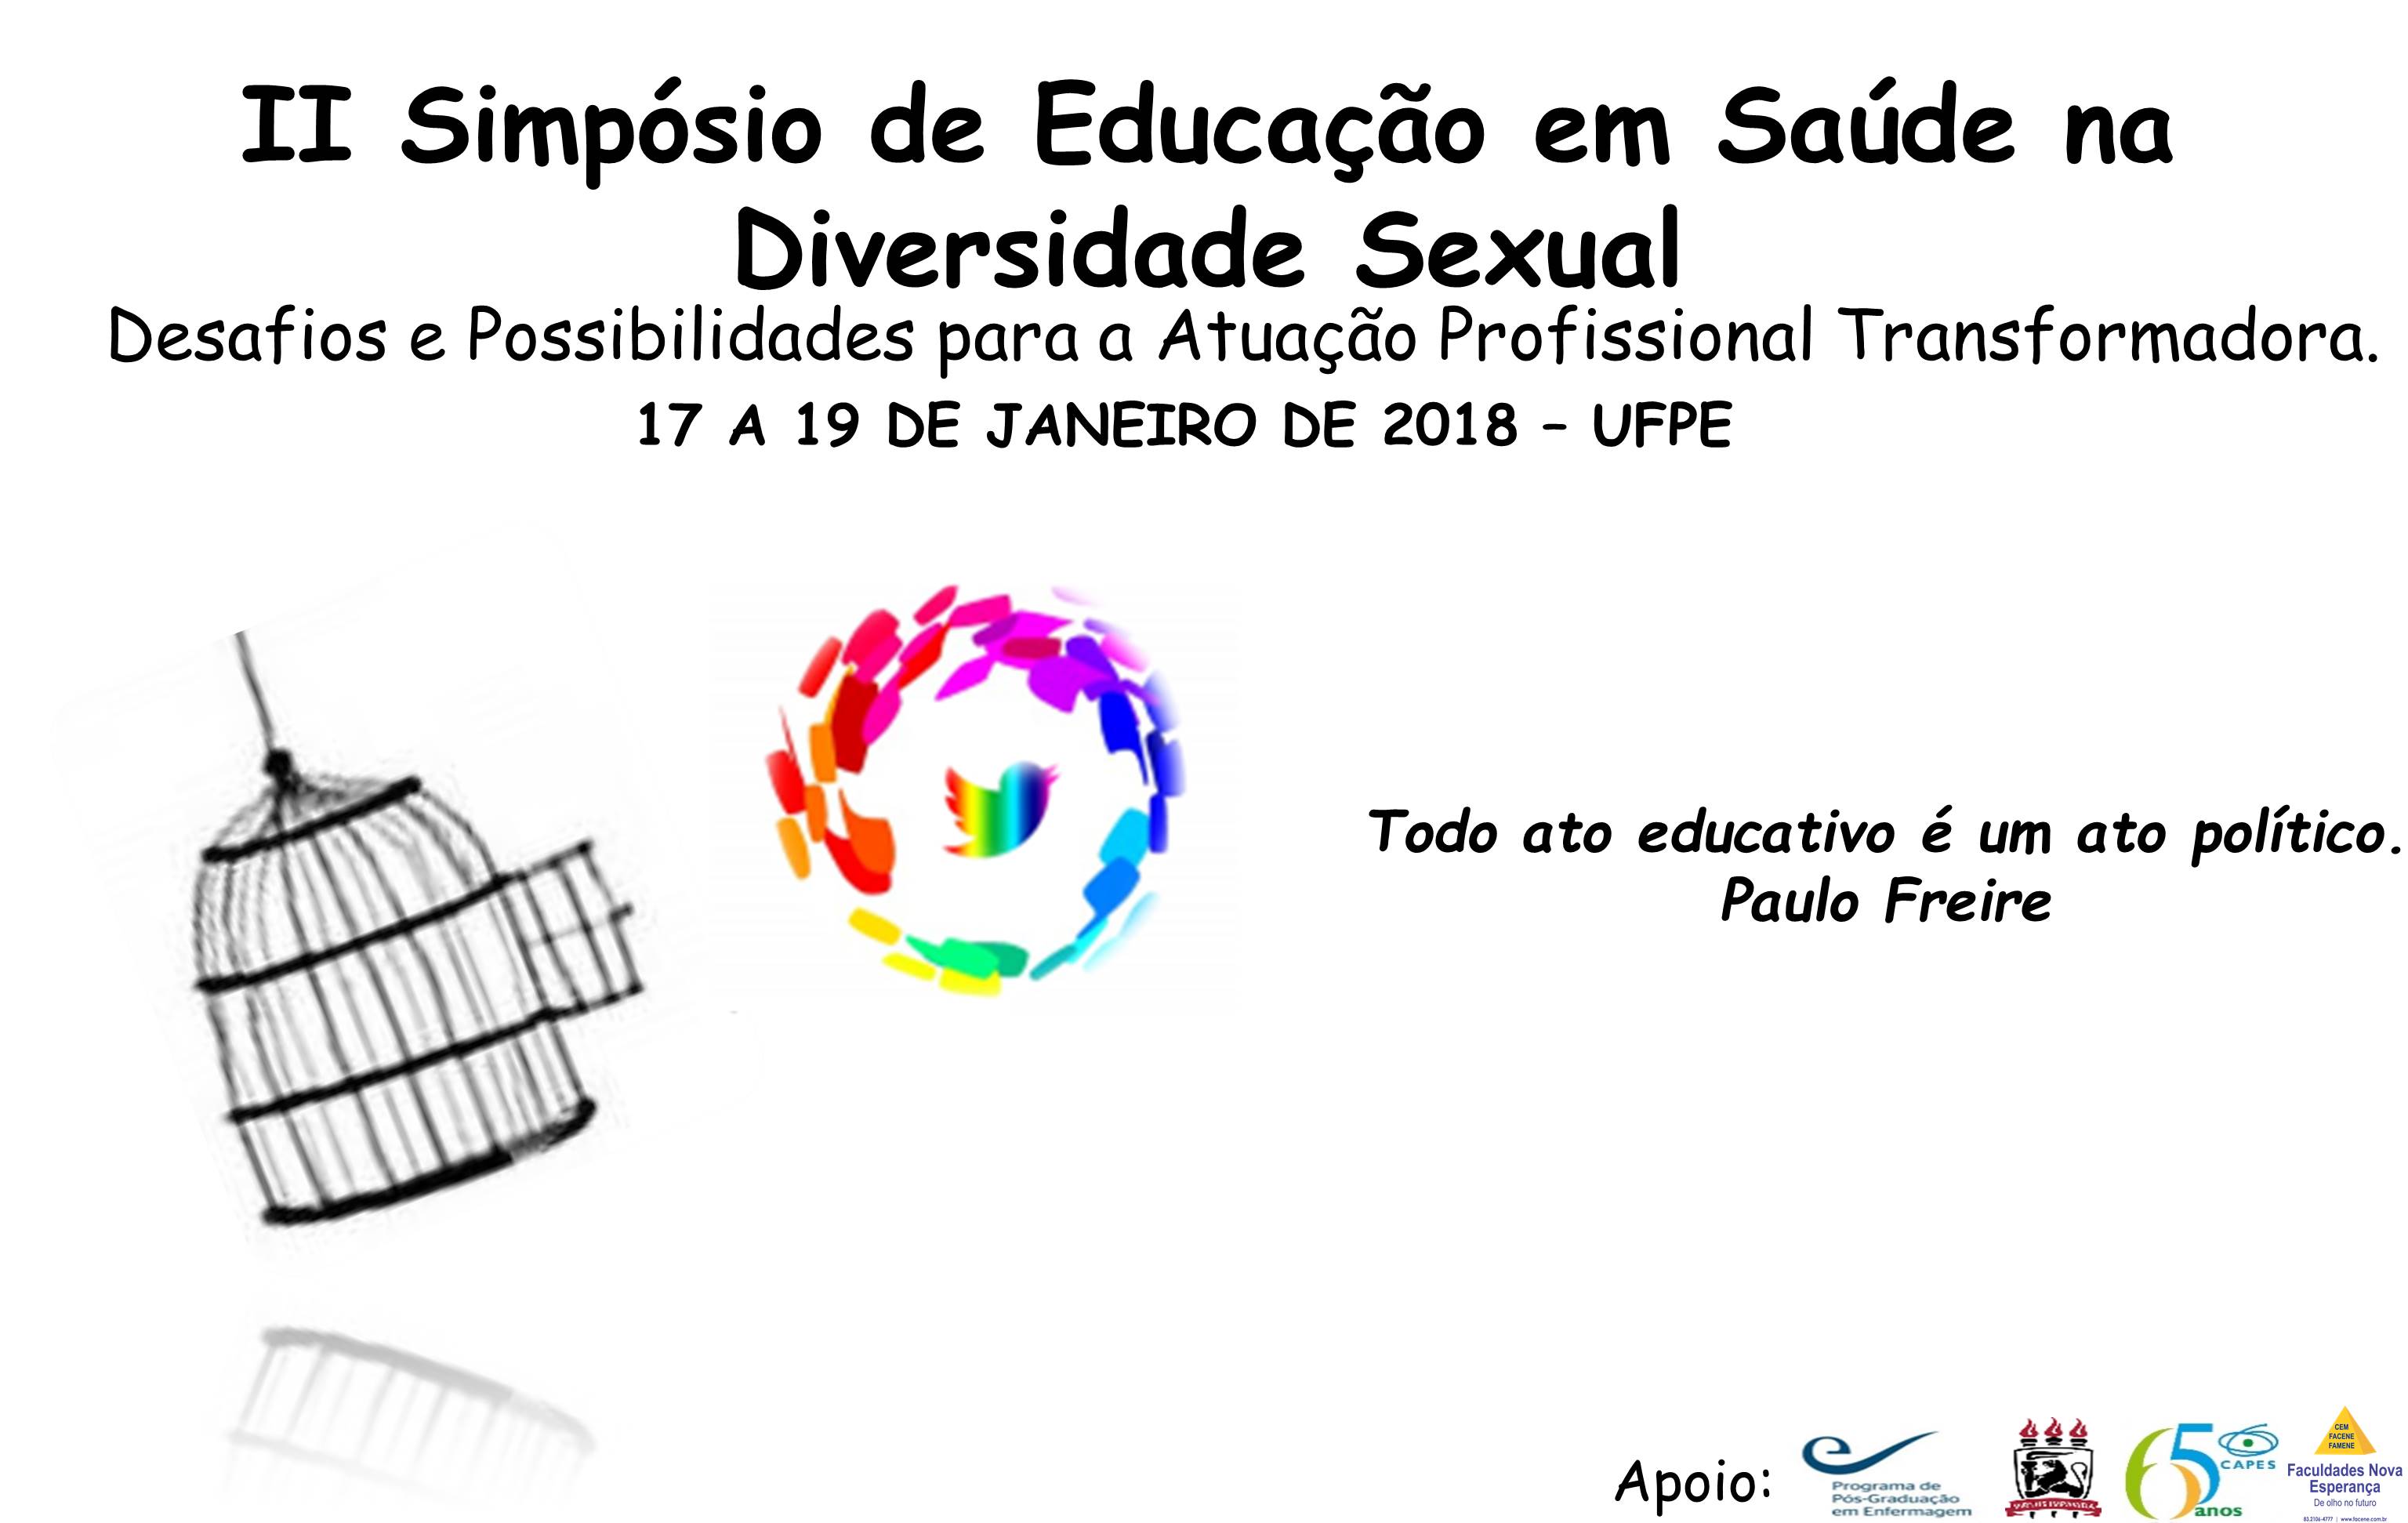 II Simpósio de Educação em Saúde na Diversidade Sexual